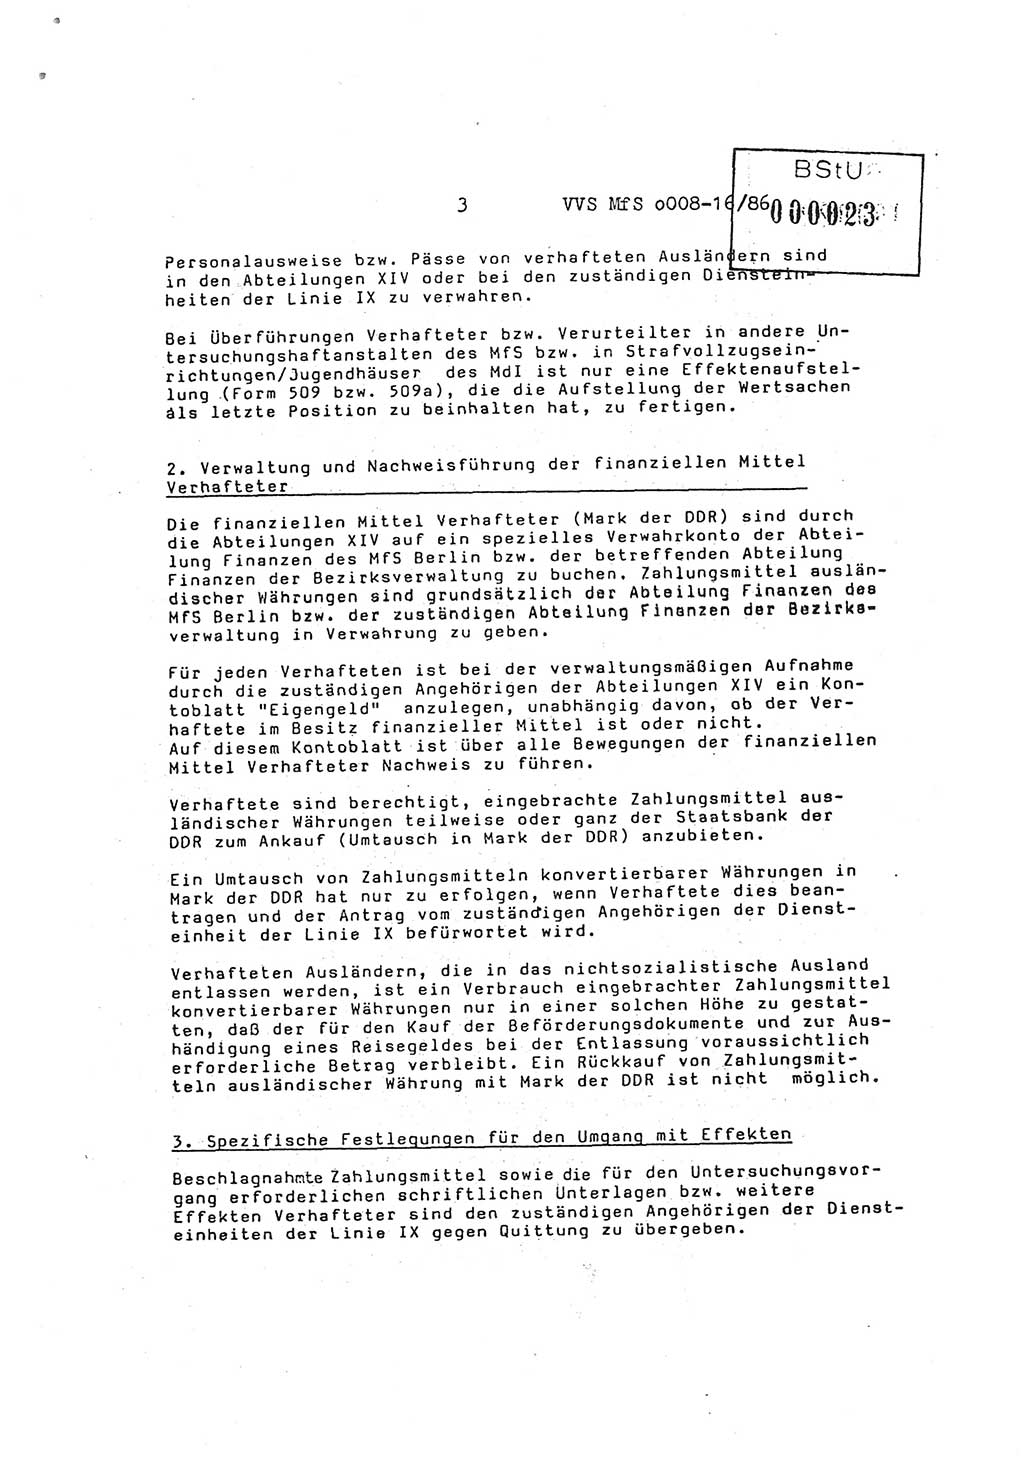 Ordnung Nr. 3/86 über den Umgang mit den Effekten Verhafteter (Effektenordnung) in den Untersuchungshaftanstalten (UHA) des MfS (Ministerium für Staatssicherheit) [Deutsche Demokratische Republik (DDR)], Abteilung ⅩⅣ, Leiter, Vertrauliche Verschlußsache (VVS) o008-16/86, Berlin, 29.1.1986, Seite 3 (Ordn. 3/86 UHA MfS DDR Abt. ⅩⅣ VVS o008-16/86 1986, S. 3)